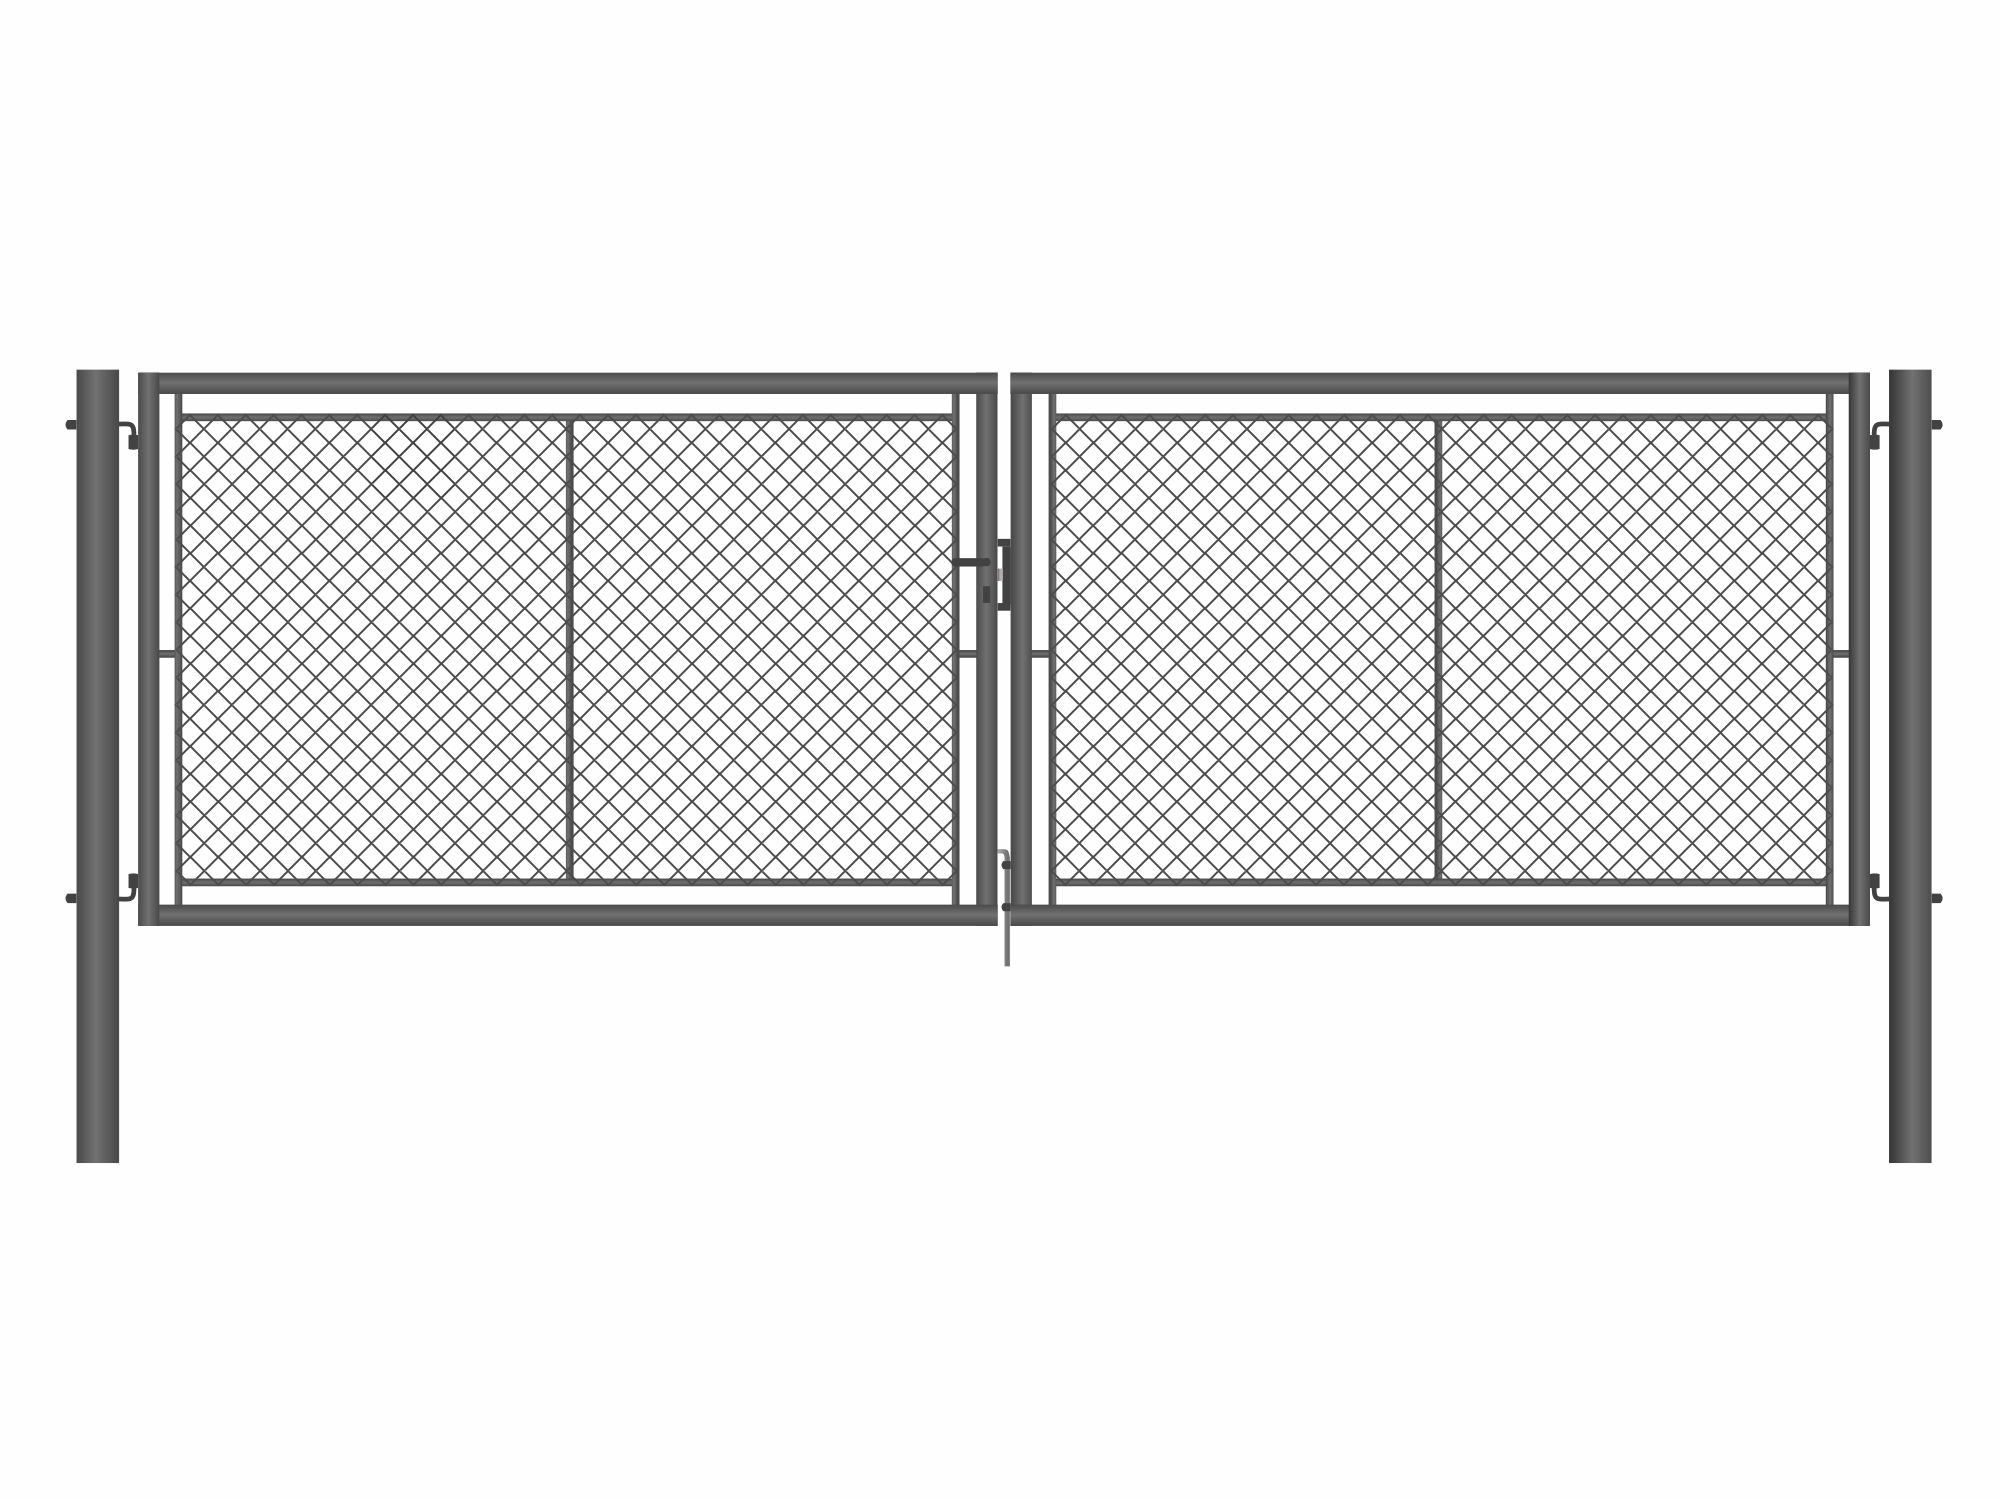 Brána zahradní dvoukřídlá antracit, výška 155 x 400 cm, FAB, s výplní klasického pletiva PLOTY Sklad5 9888 535